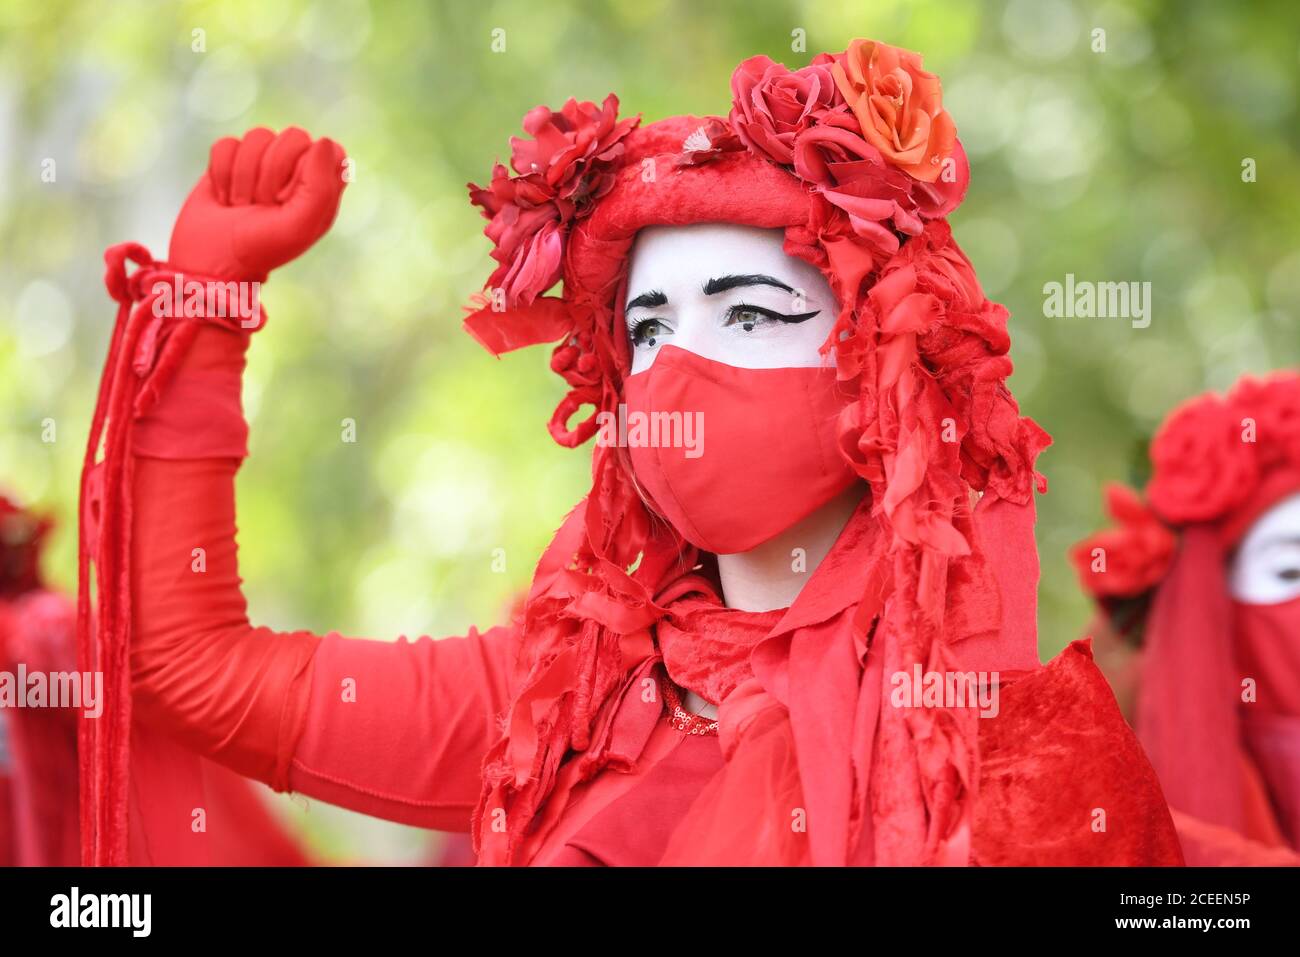 Miembros de la "Brigada Roja" participan en una manifestación de rebelión de extinción en el centro de Londres. El grupo de campaña ambiental ha planeado que se celebren marchas en varios lugares de interés de la capital, antes de trasladarse a la Plaza del Parlamento en Westminster. Foto de stock